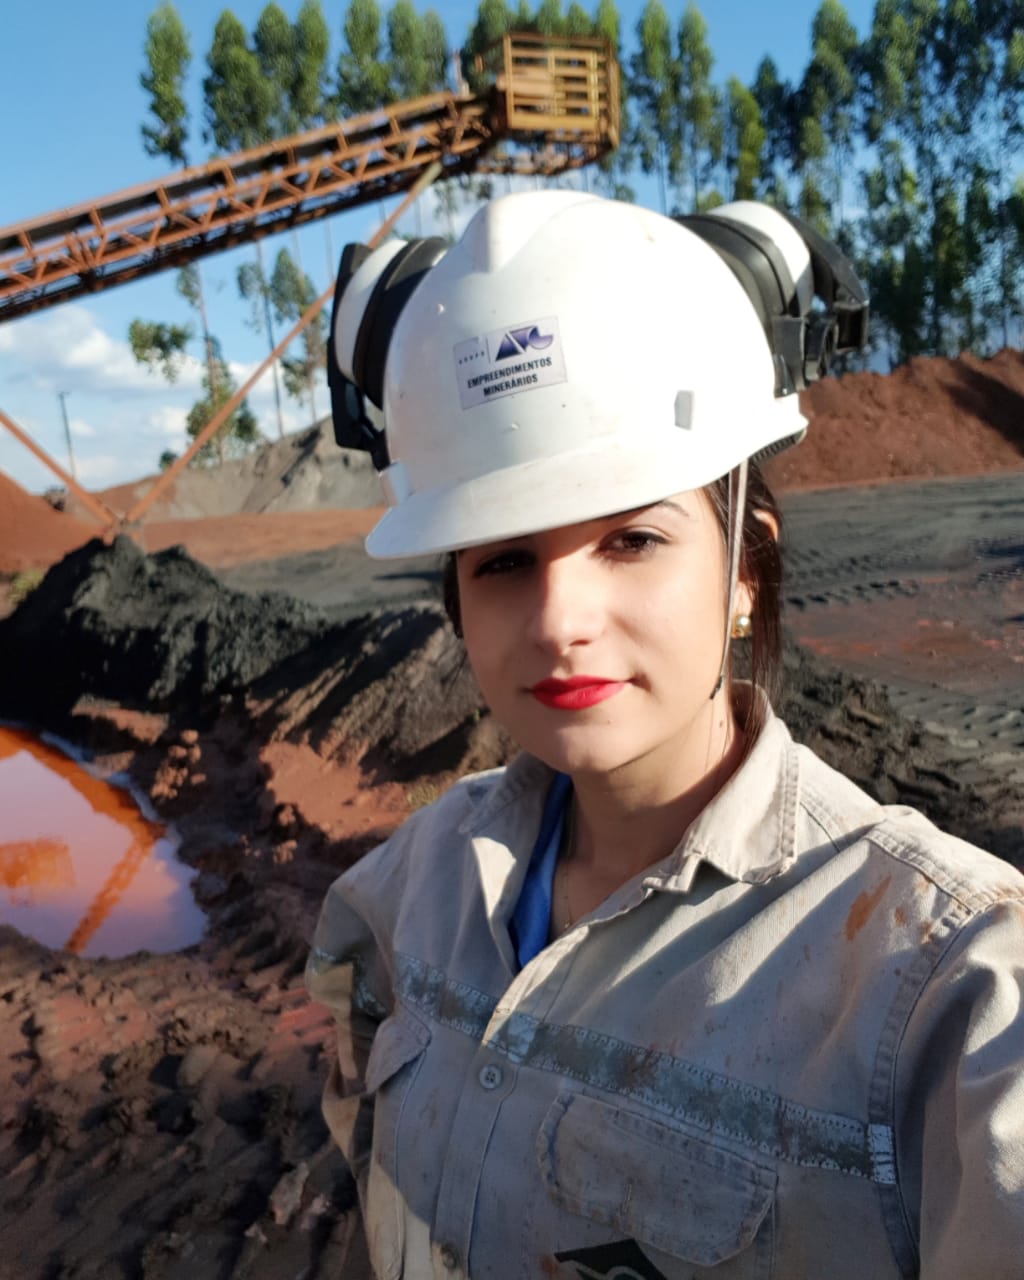 Ana Eliza Gomes, nasci em Caeté – MG, tenho 23 anos. Sou Técnica em Mineração e curso Engenharia de Minas na Universidade Estadual de Minas Gerais -UEMG.